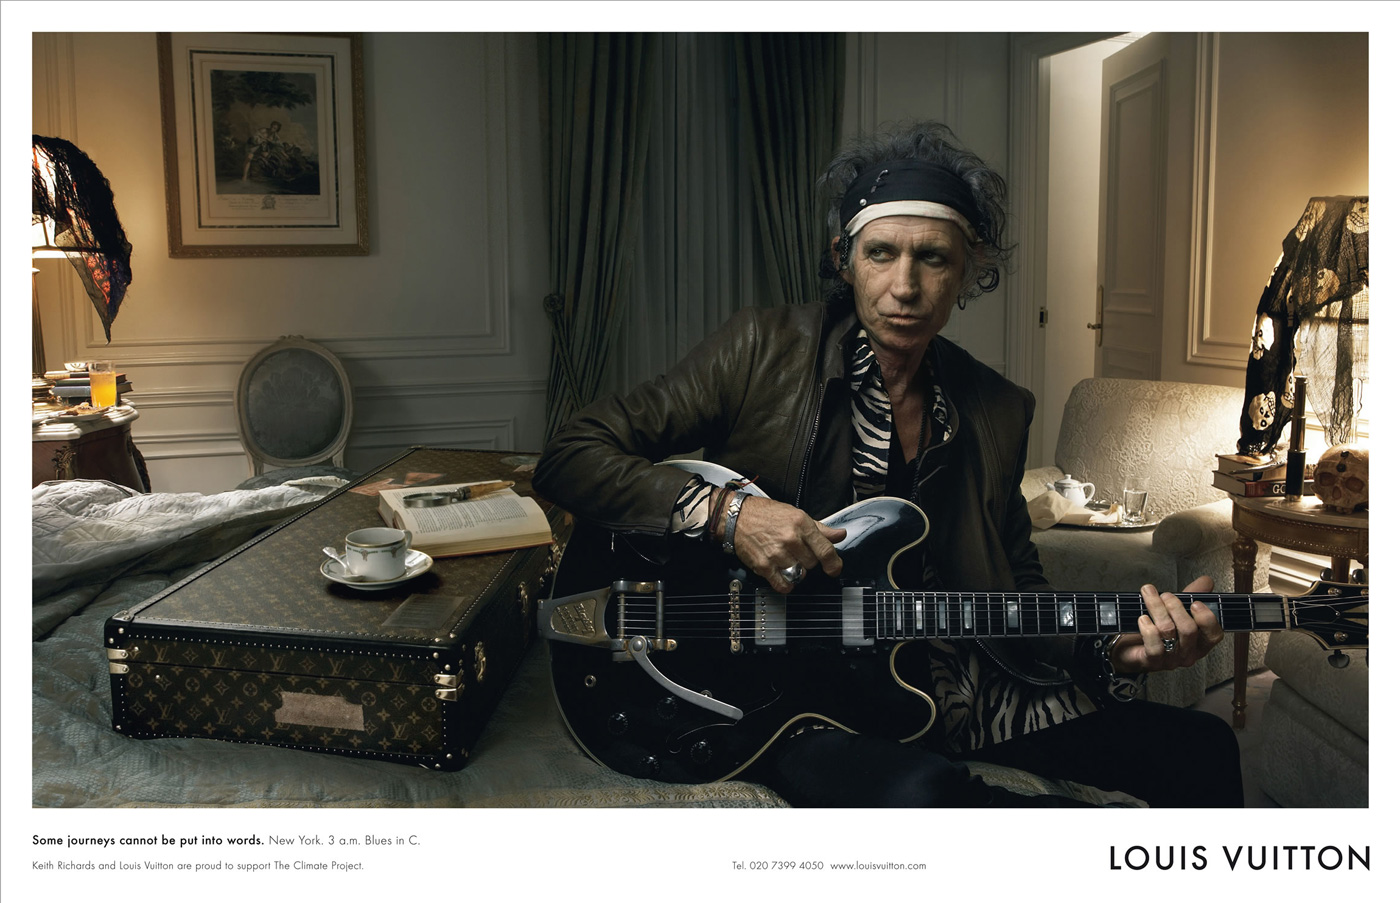 Coleccionista de Imagenes: Annie Leibovitz y Louis Vuitton, Core Values